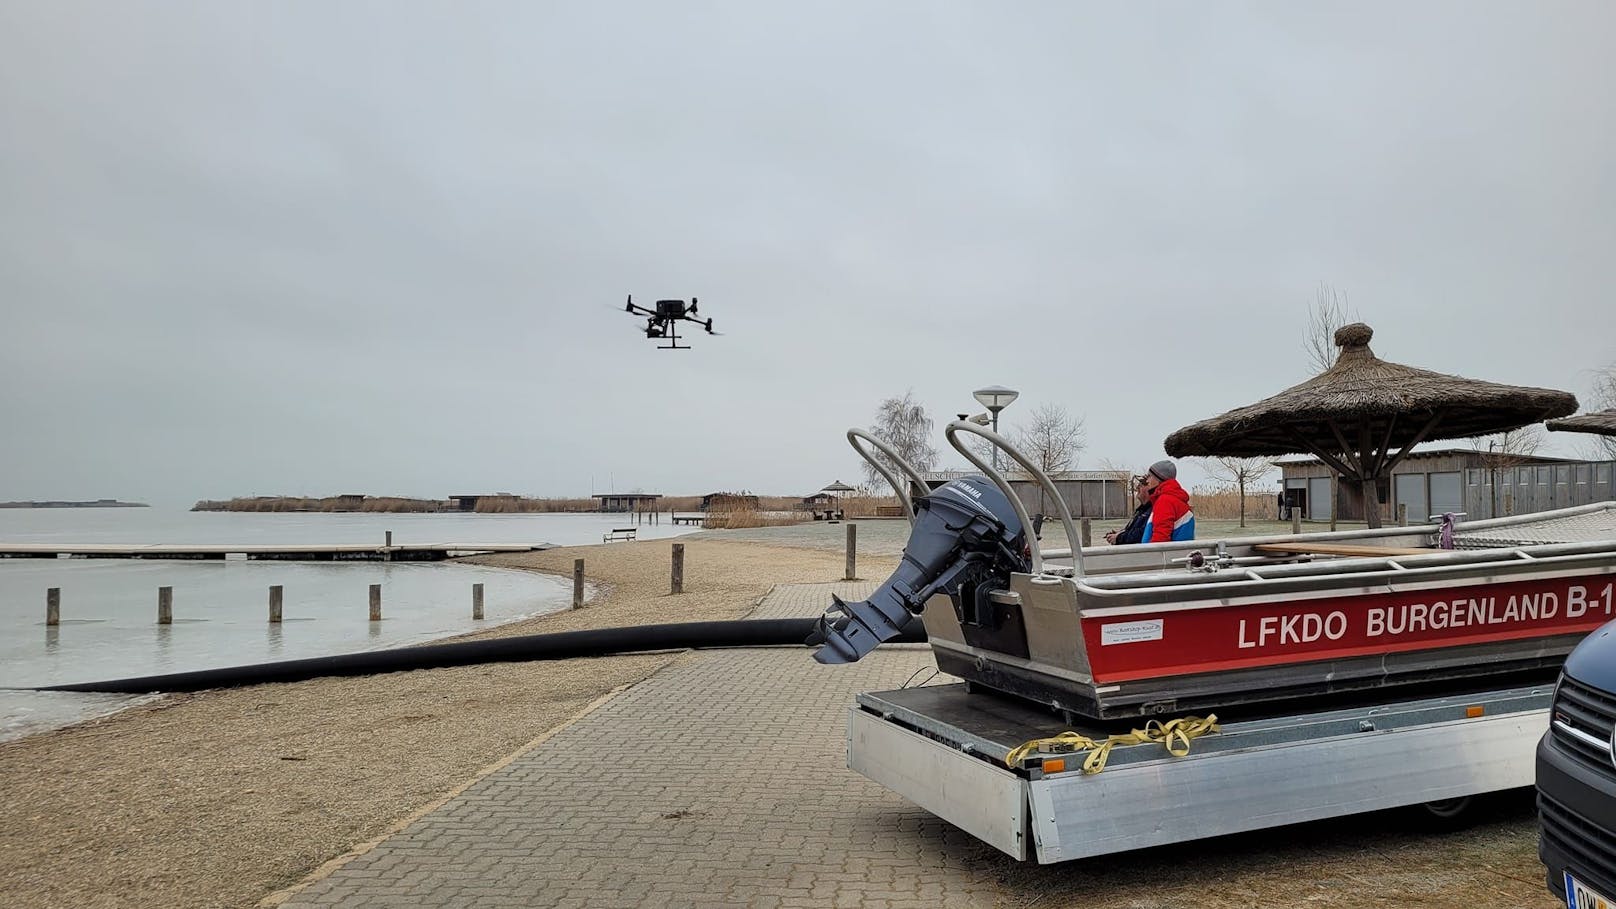 Dünnes Eis am See: Nun Drohnen-Suche nach Vermisstem